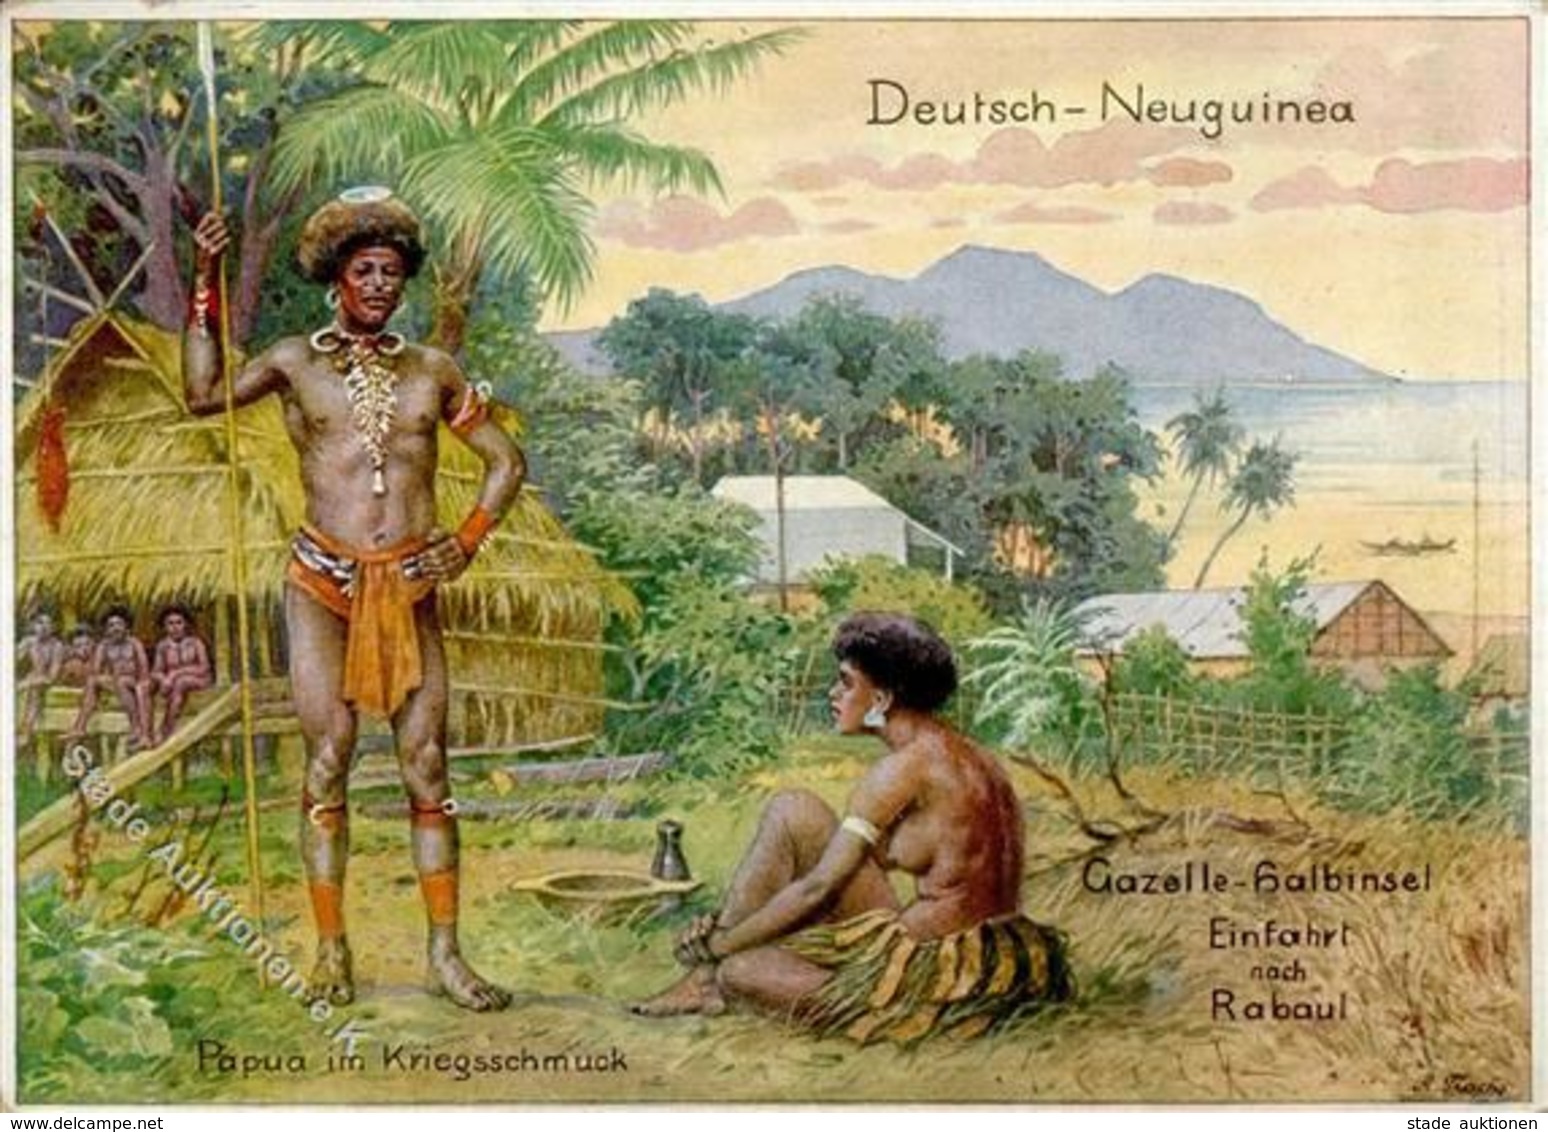 Kolonien DNG - DEUTSCH-NEUGUINEA - Gazelle-Halbinsel Einfahrt Nach Rabaul I-II Colonies - Asien